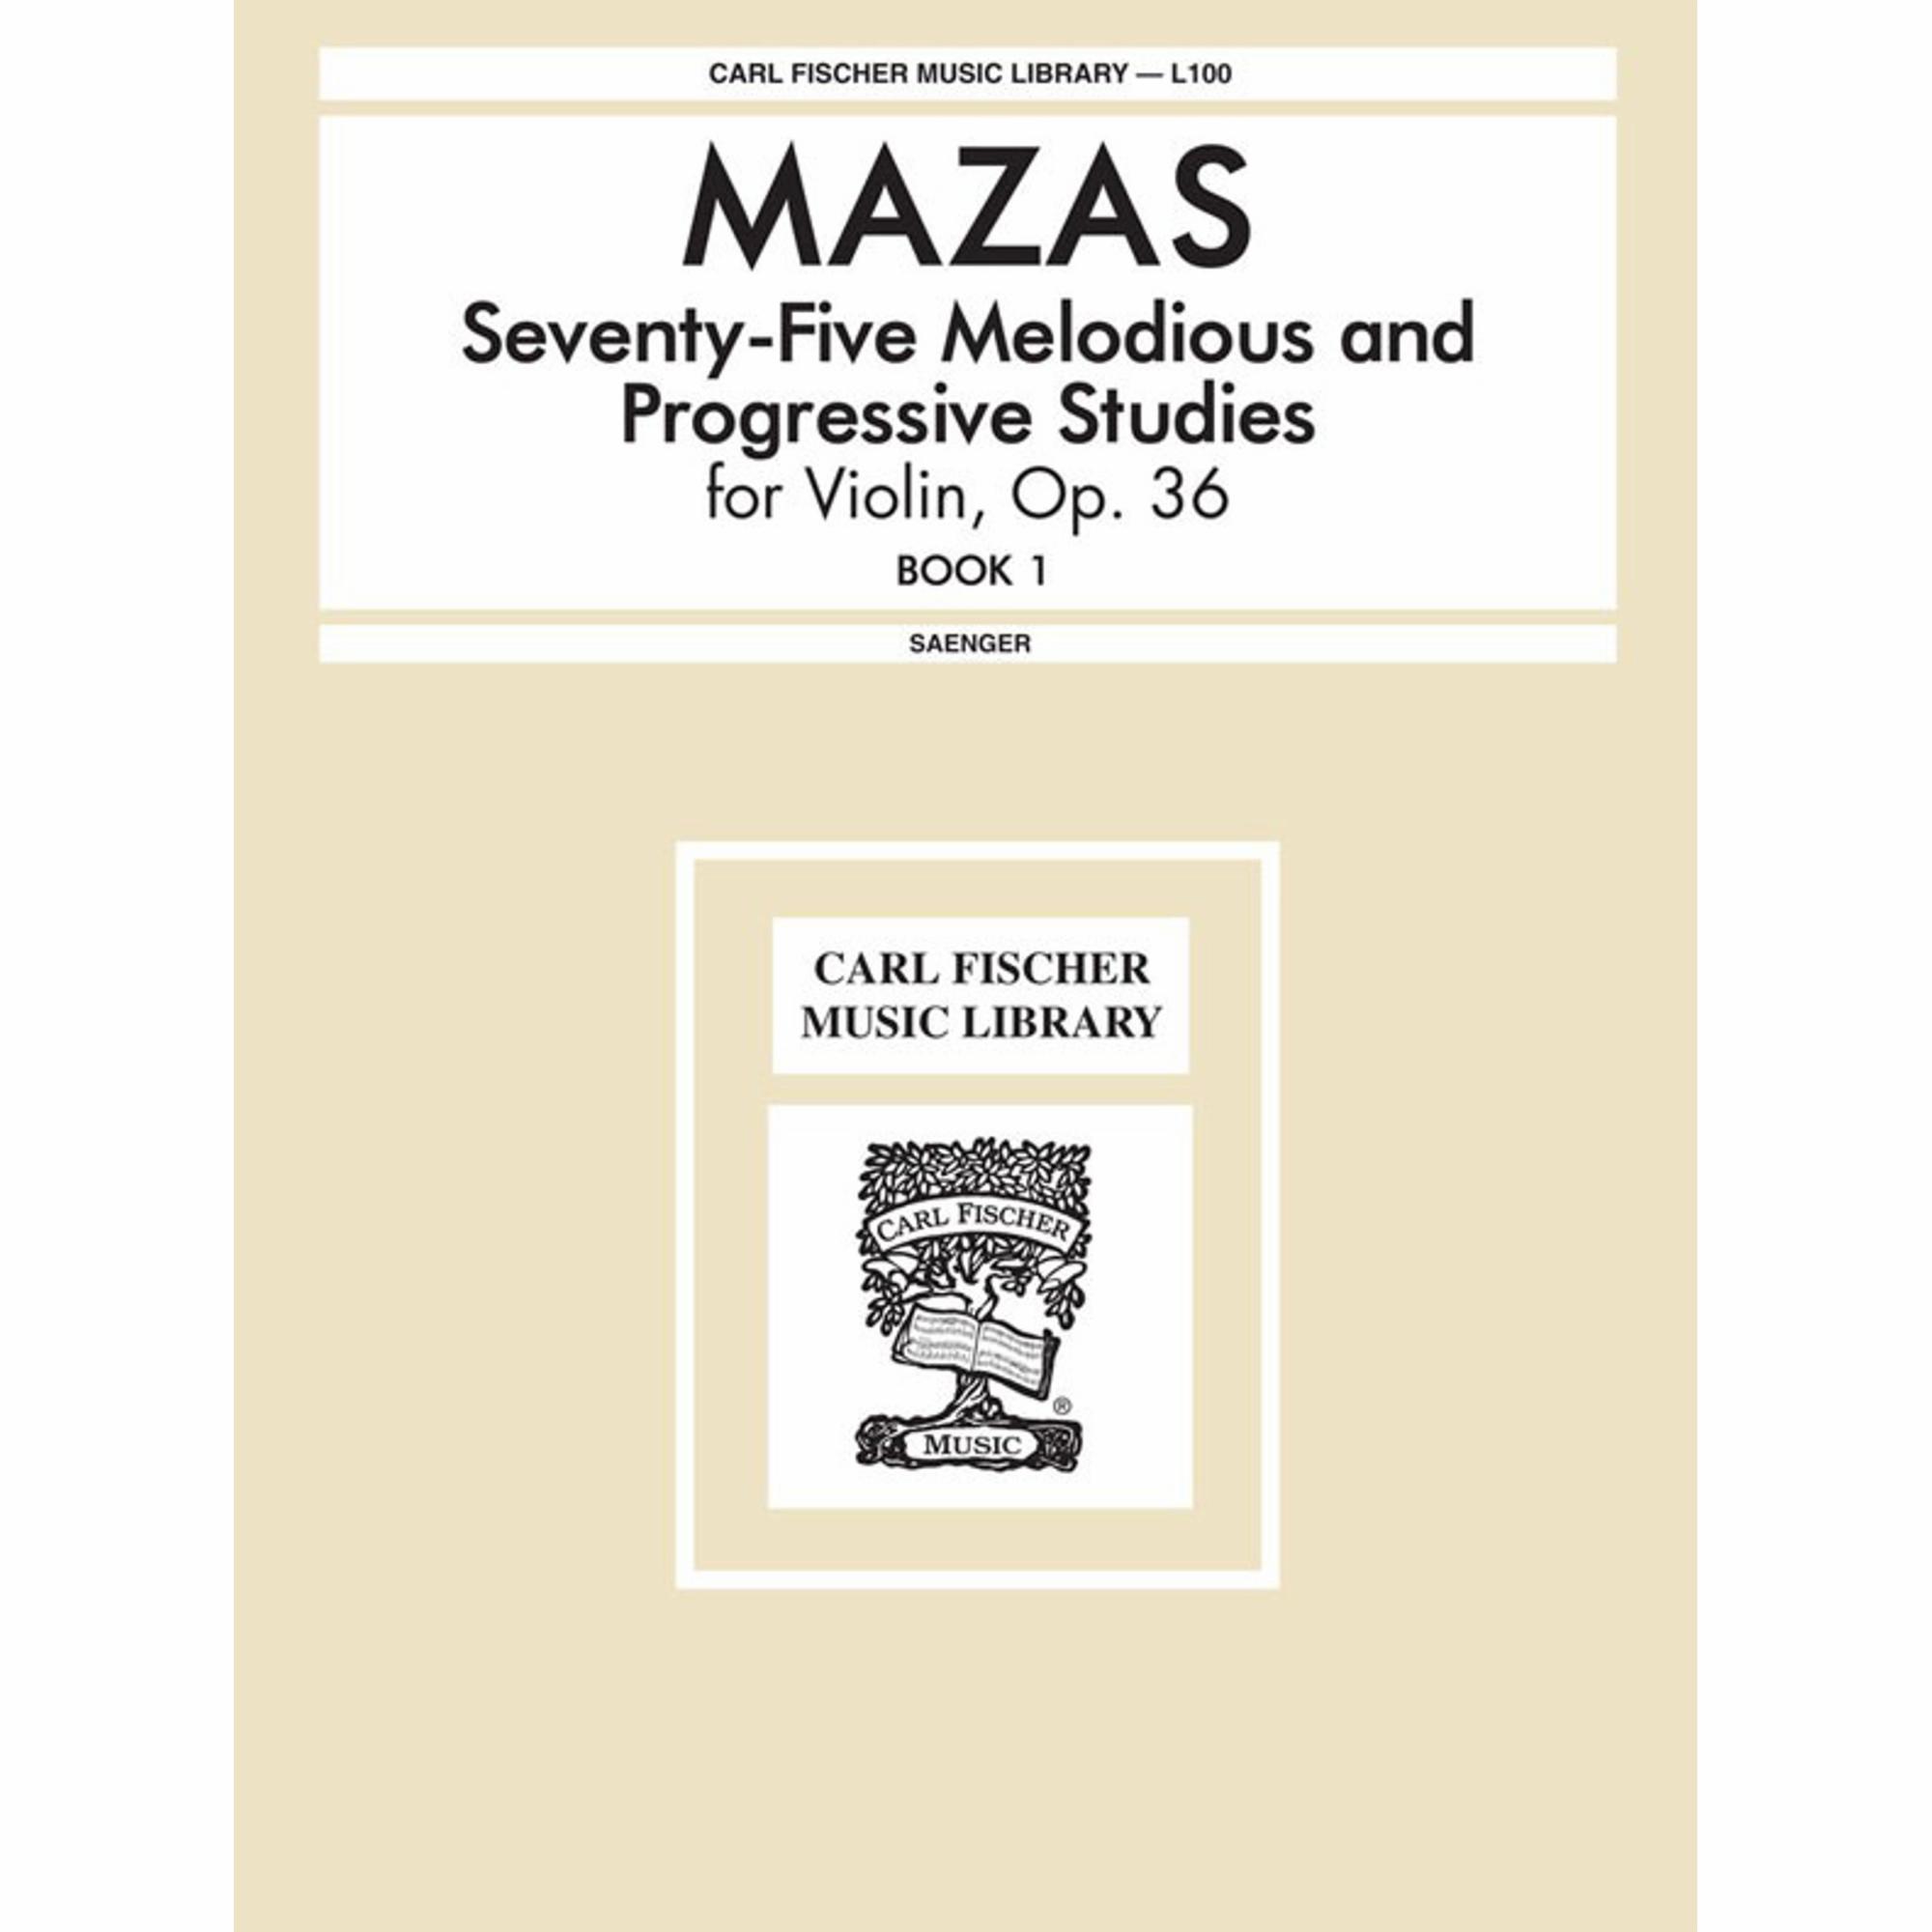 Mazas -- Etudes Speciales, Op. 36, Book 1 for Violin